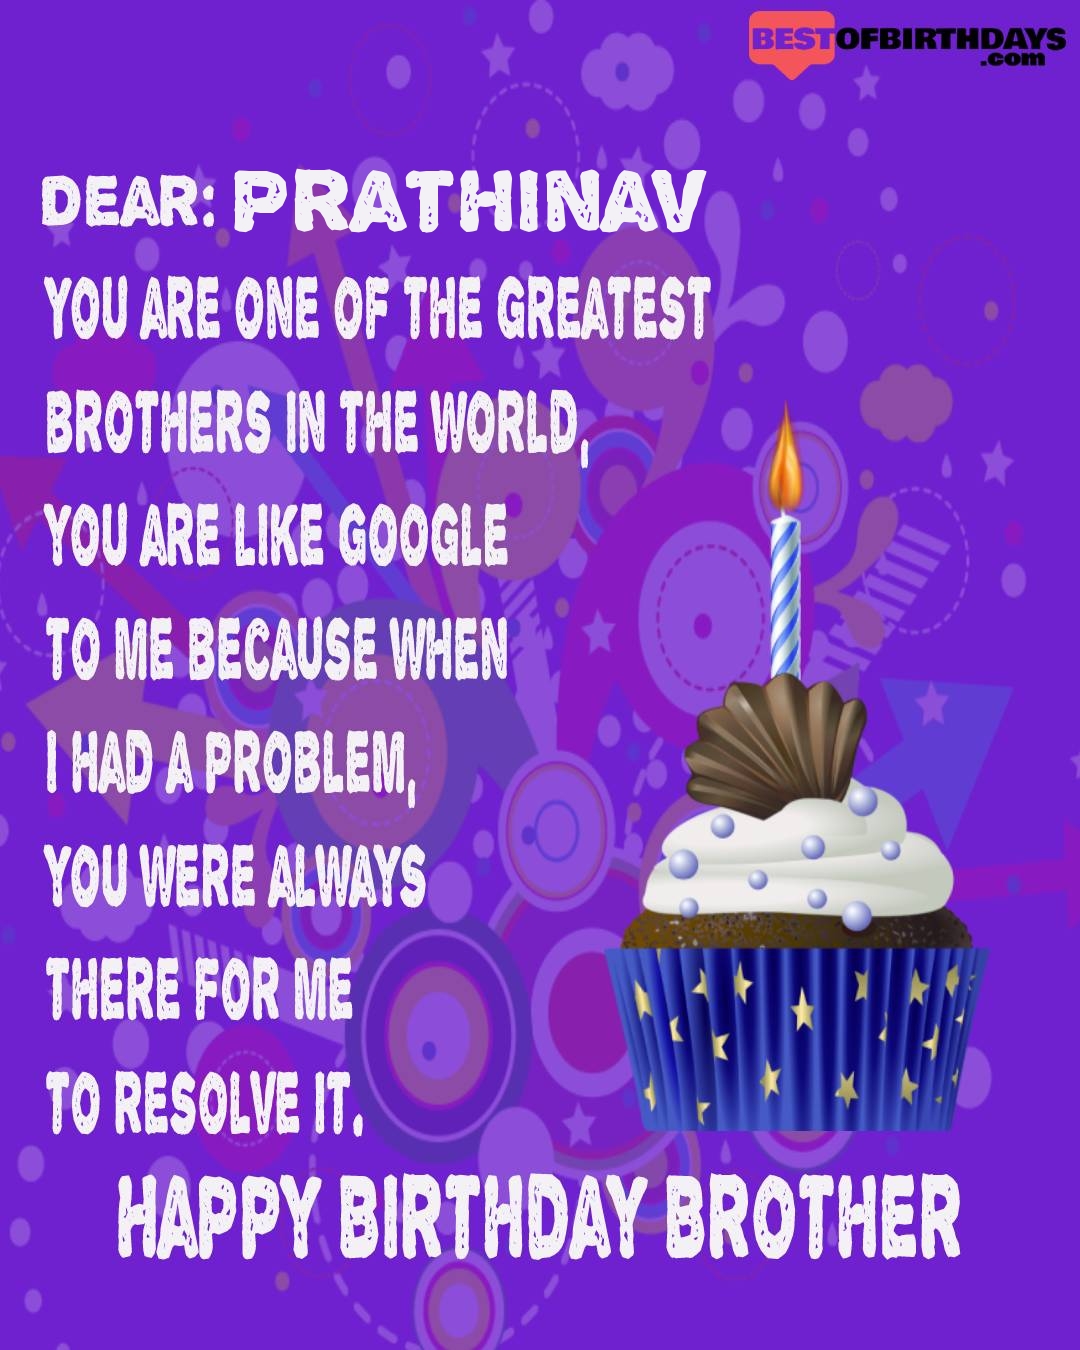 Happy birthday prathinav bhai brother bro